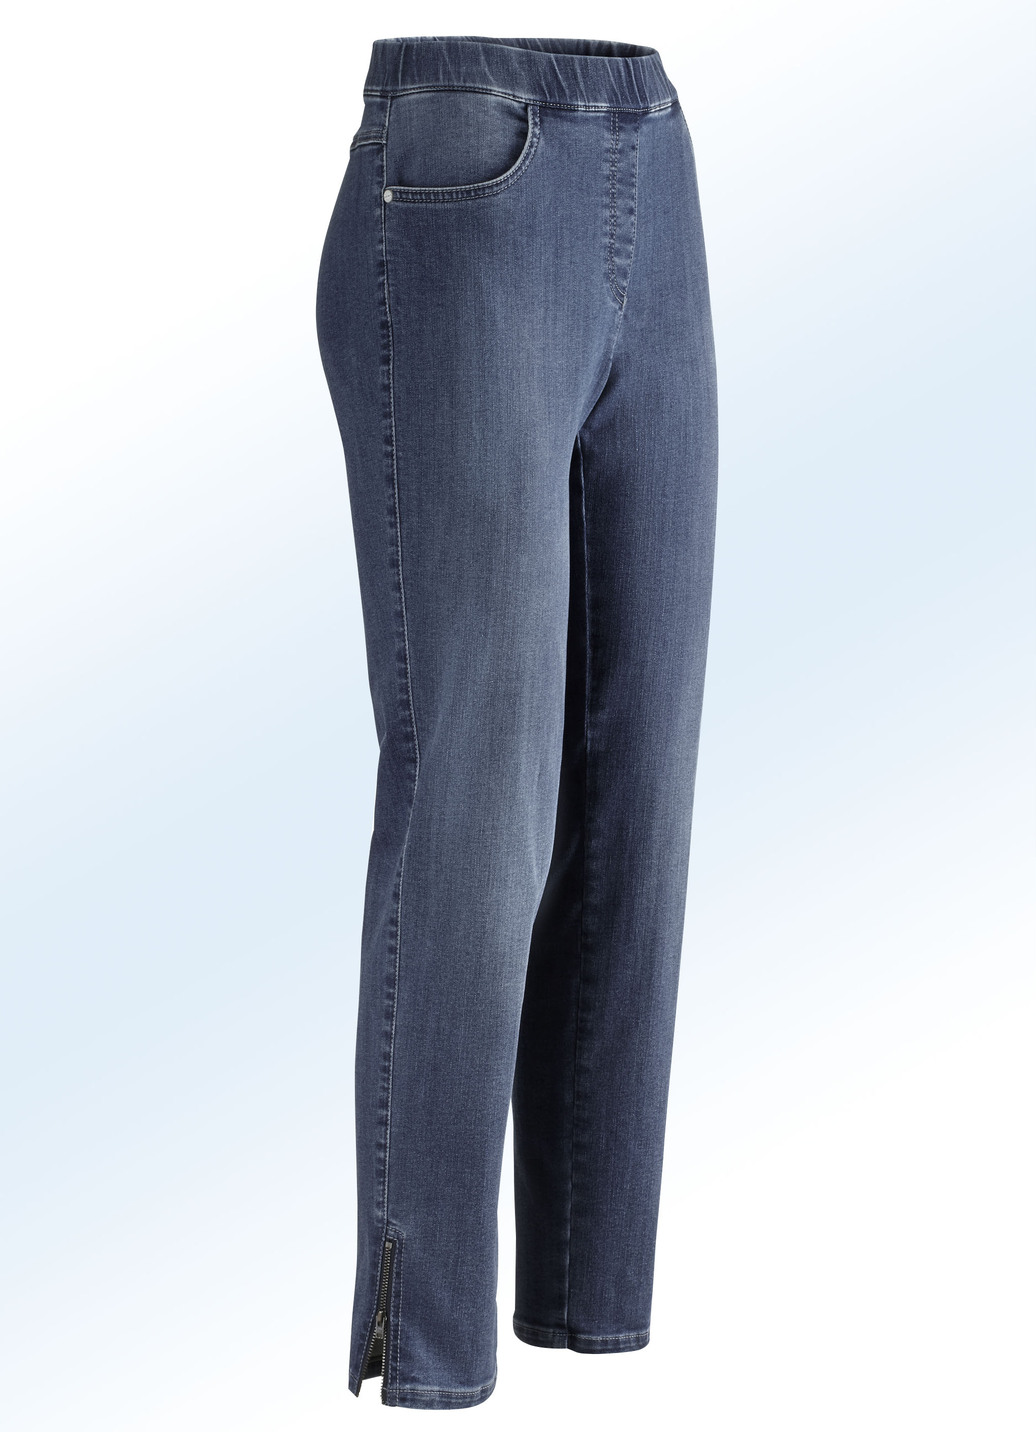 Magic-Jeans mit hohem Stretchanteil, Dunkelblau, Größe 44 von ASCARI